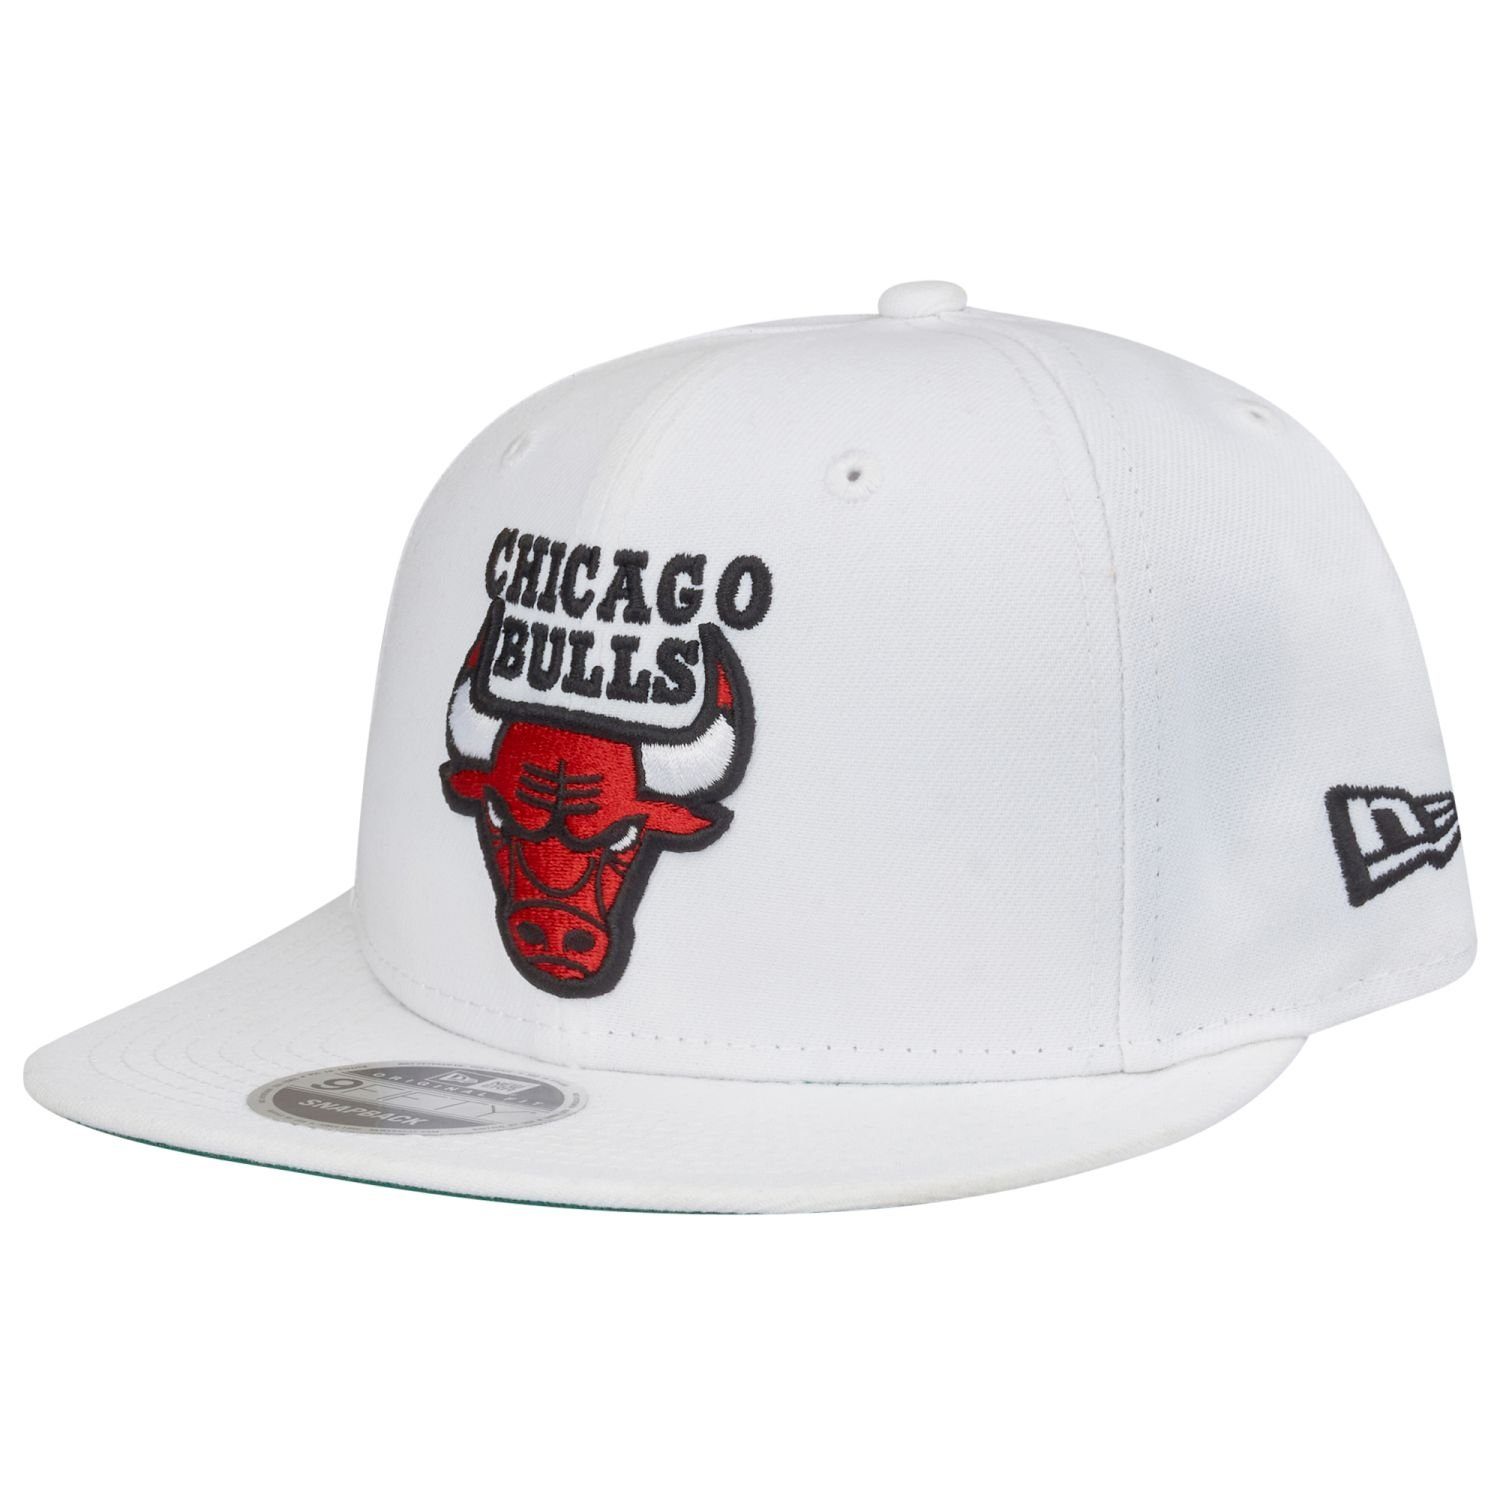 Snapback New 9Fifty Era Bulls Cap Original Chicago